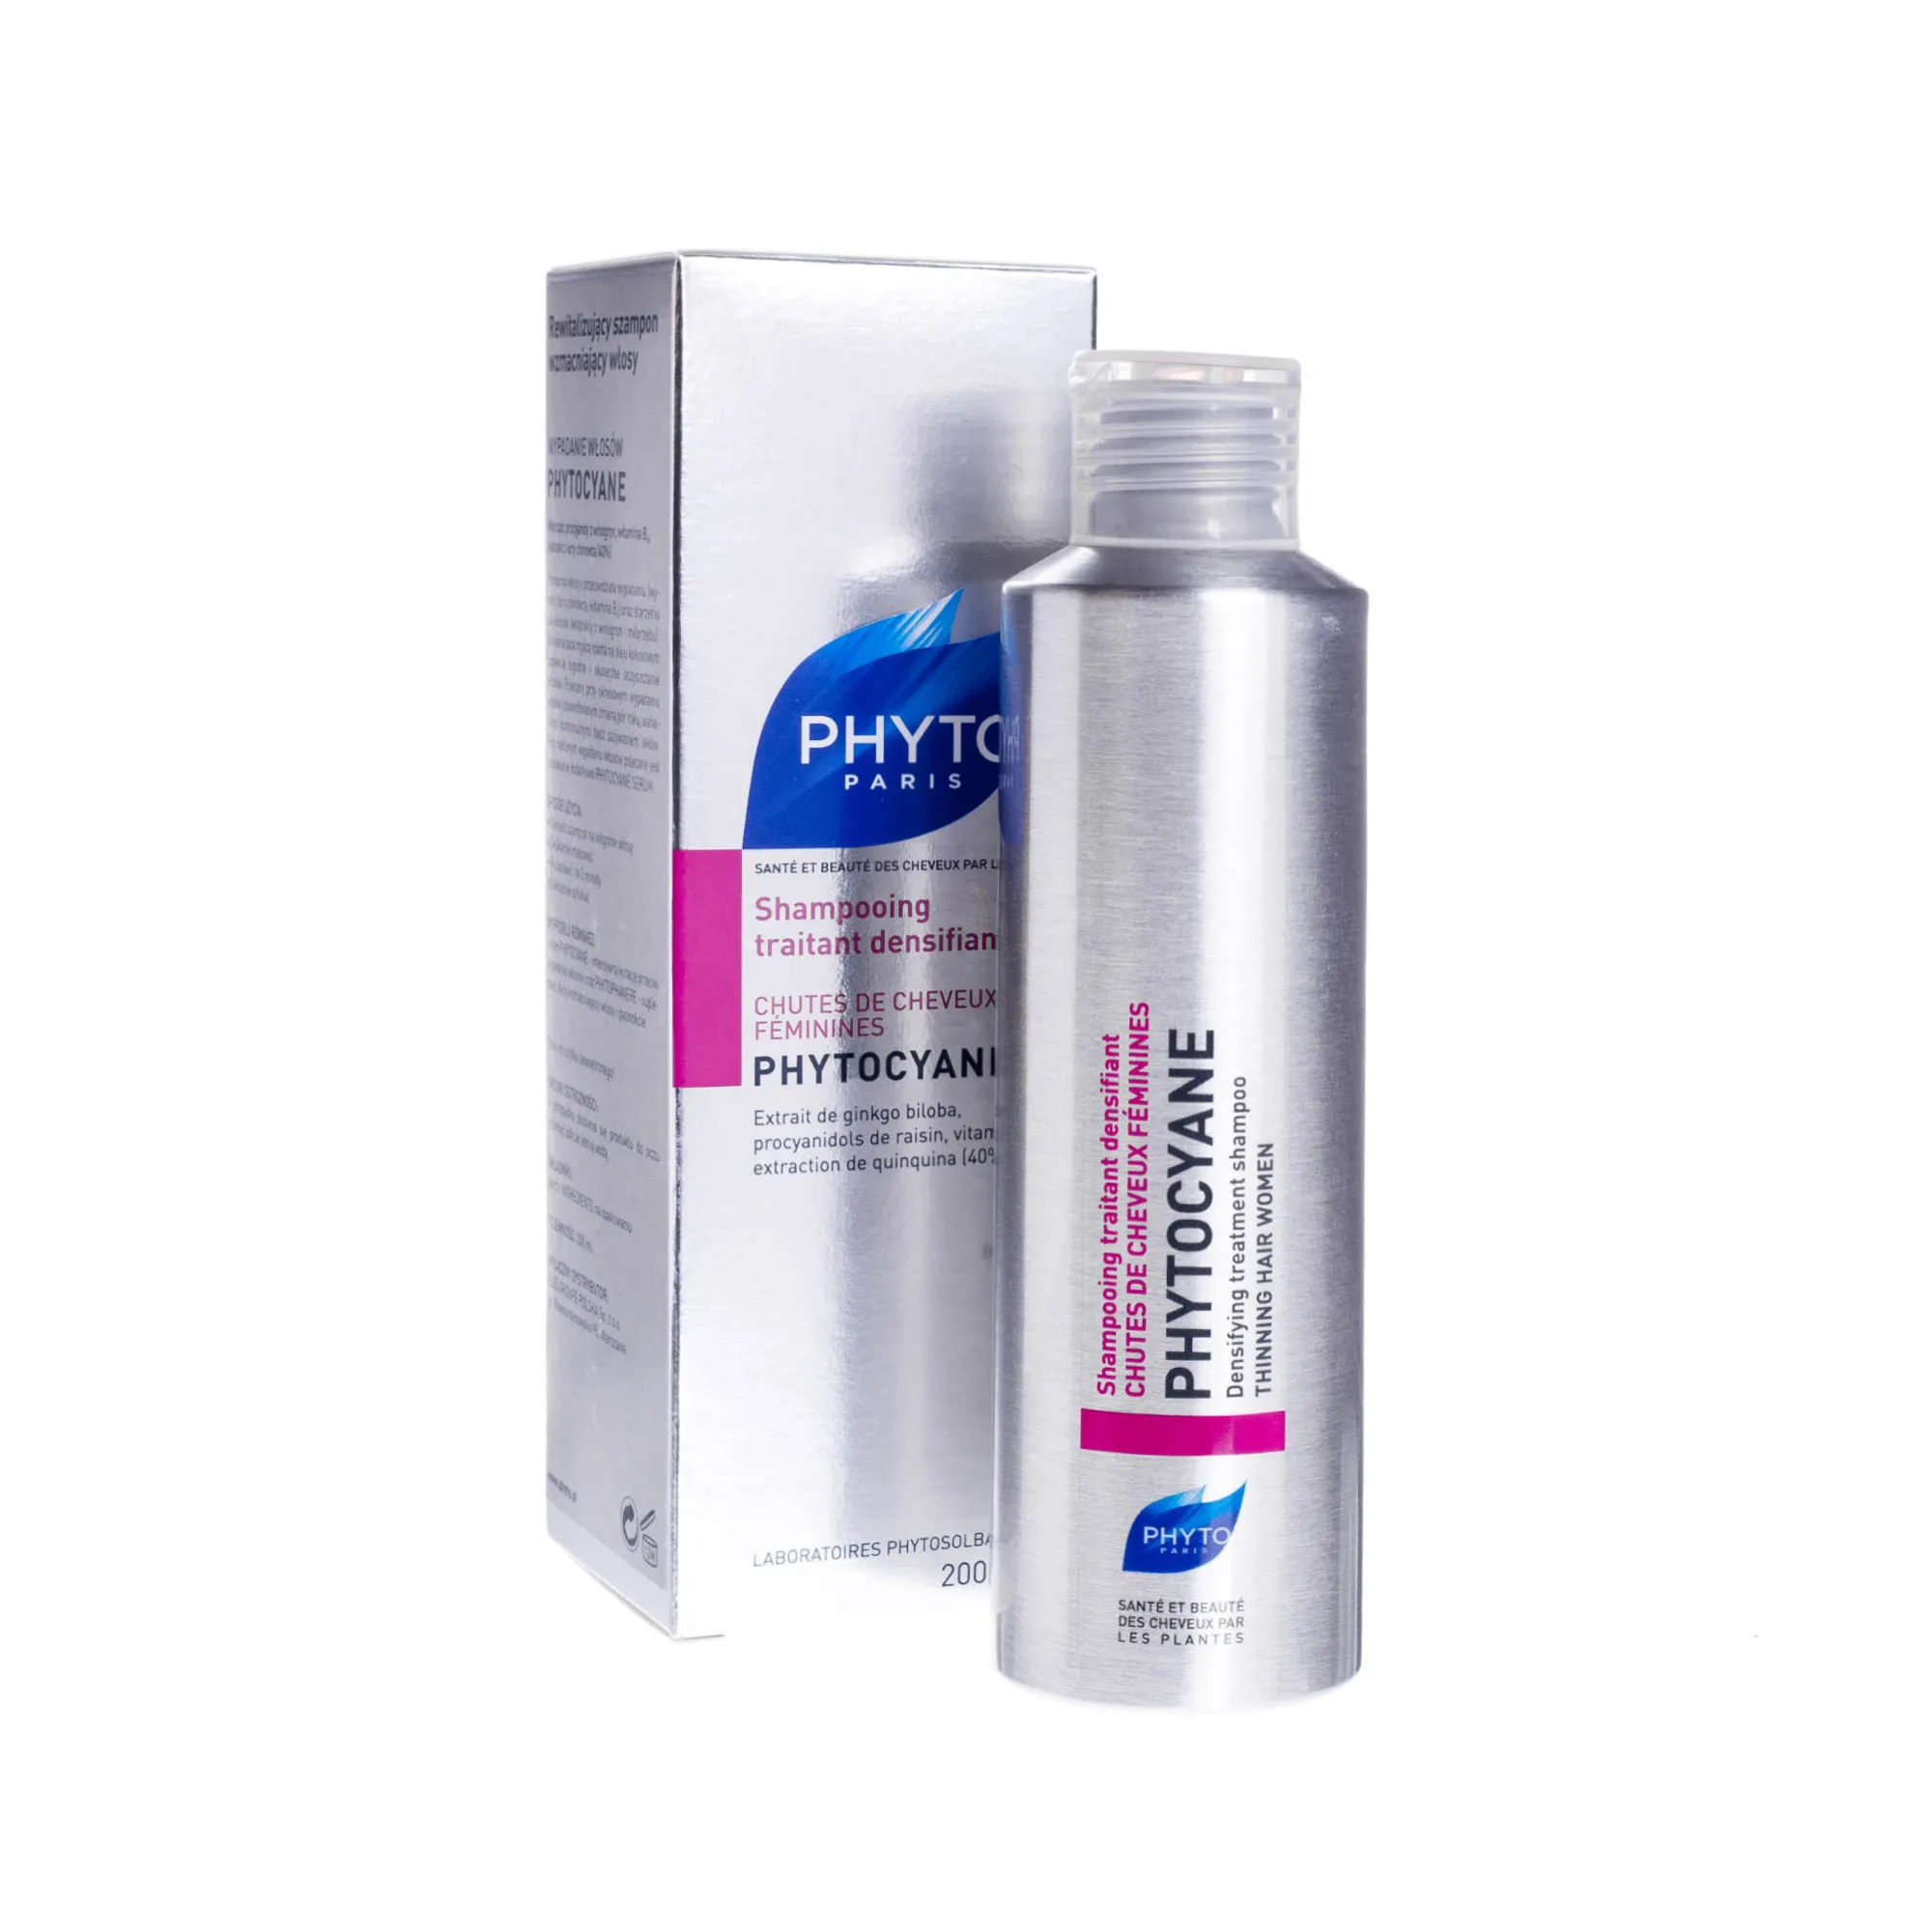 Phyto Paris -rewitalizujący szampon wzmacniający włosy, 200 ml